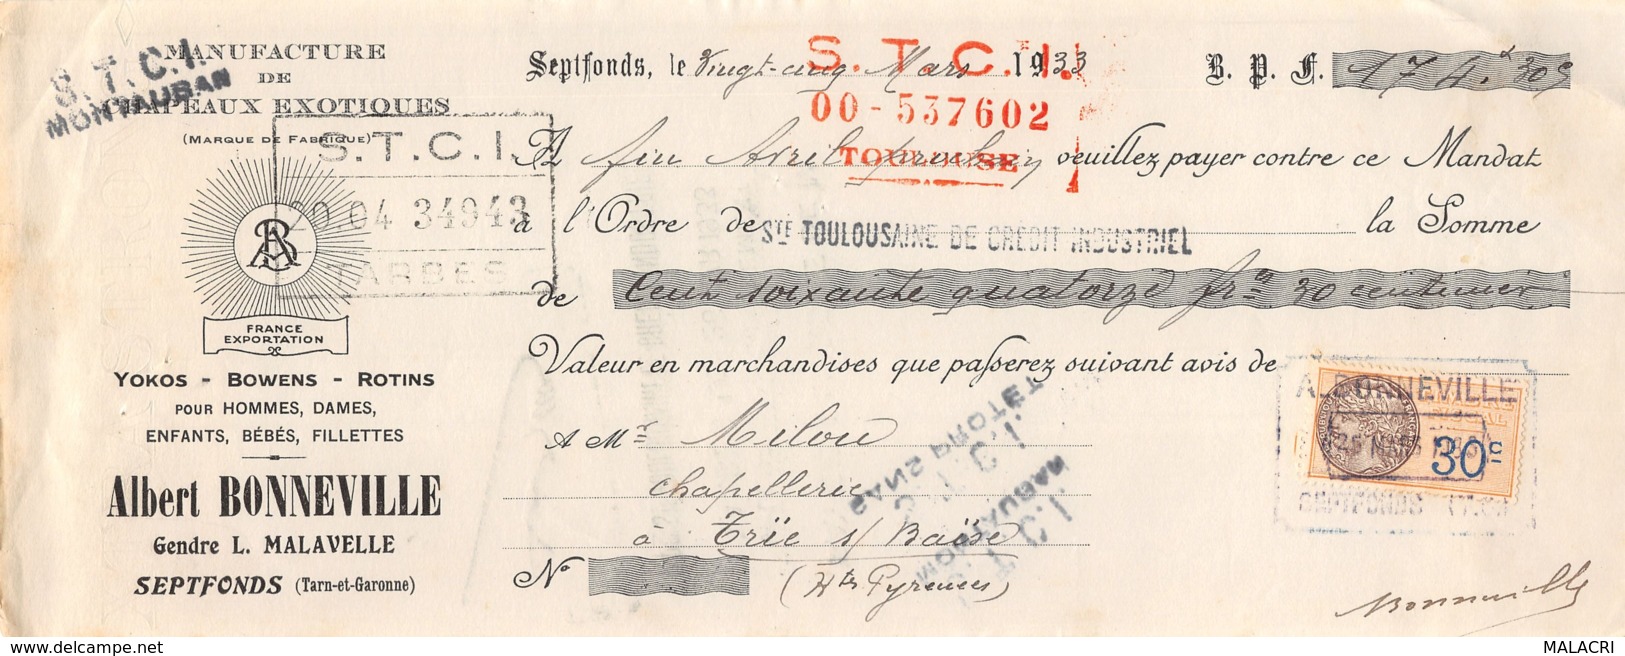 13   -1006    1933    ALBERT BONNEVILLE A SEPTFONDS - M. MILOU A TRIE SUR BAISE-13   1006 - Lettres De Change